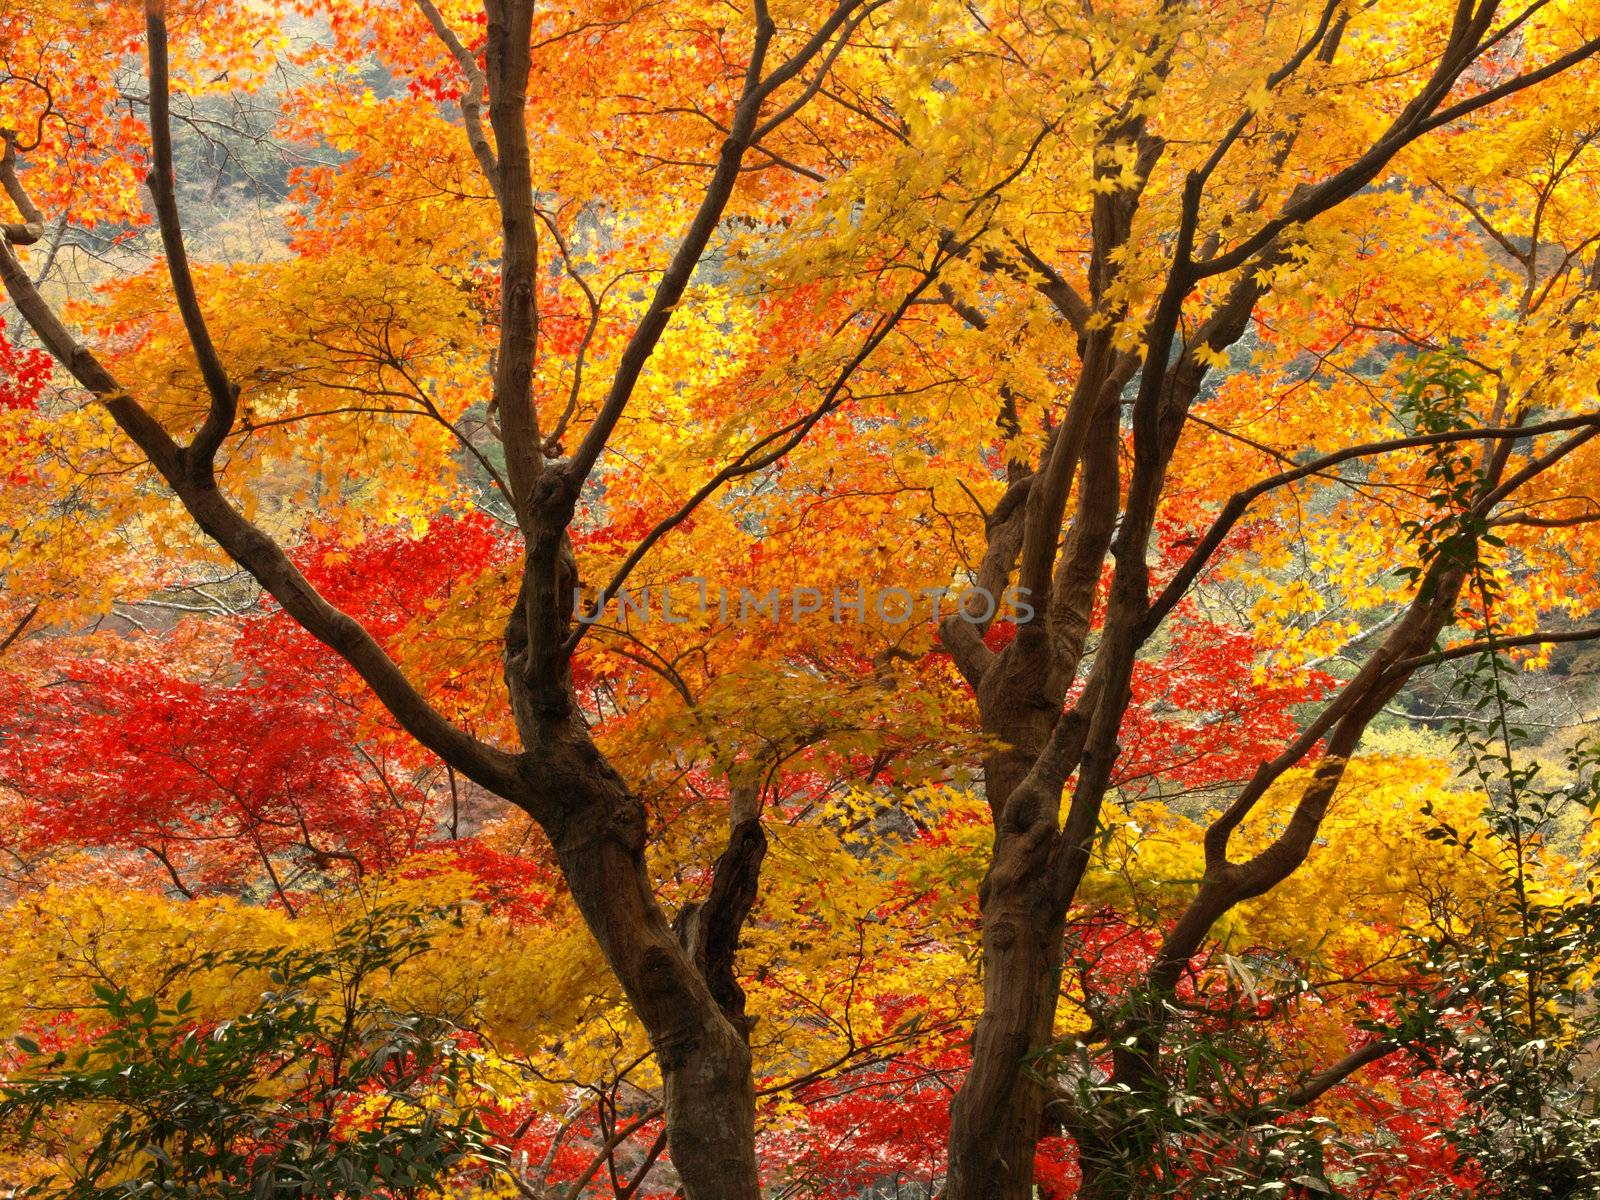 Autumn in Arashiyama, Kyoto, Japan